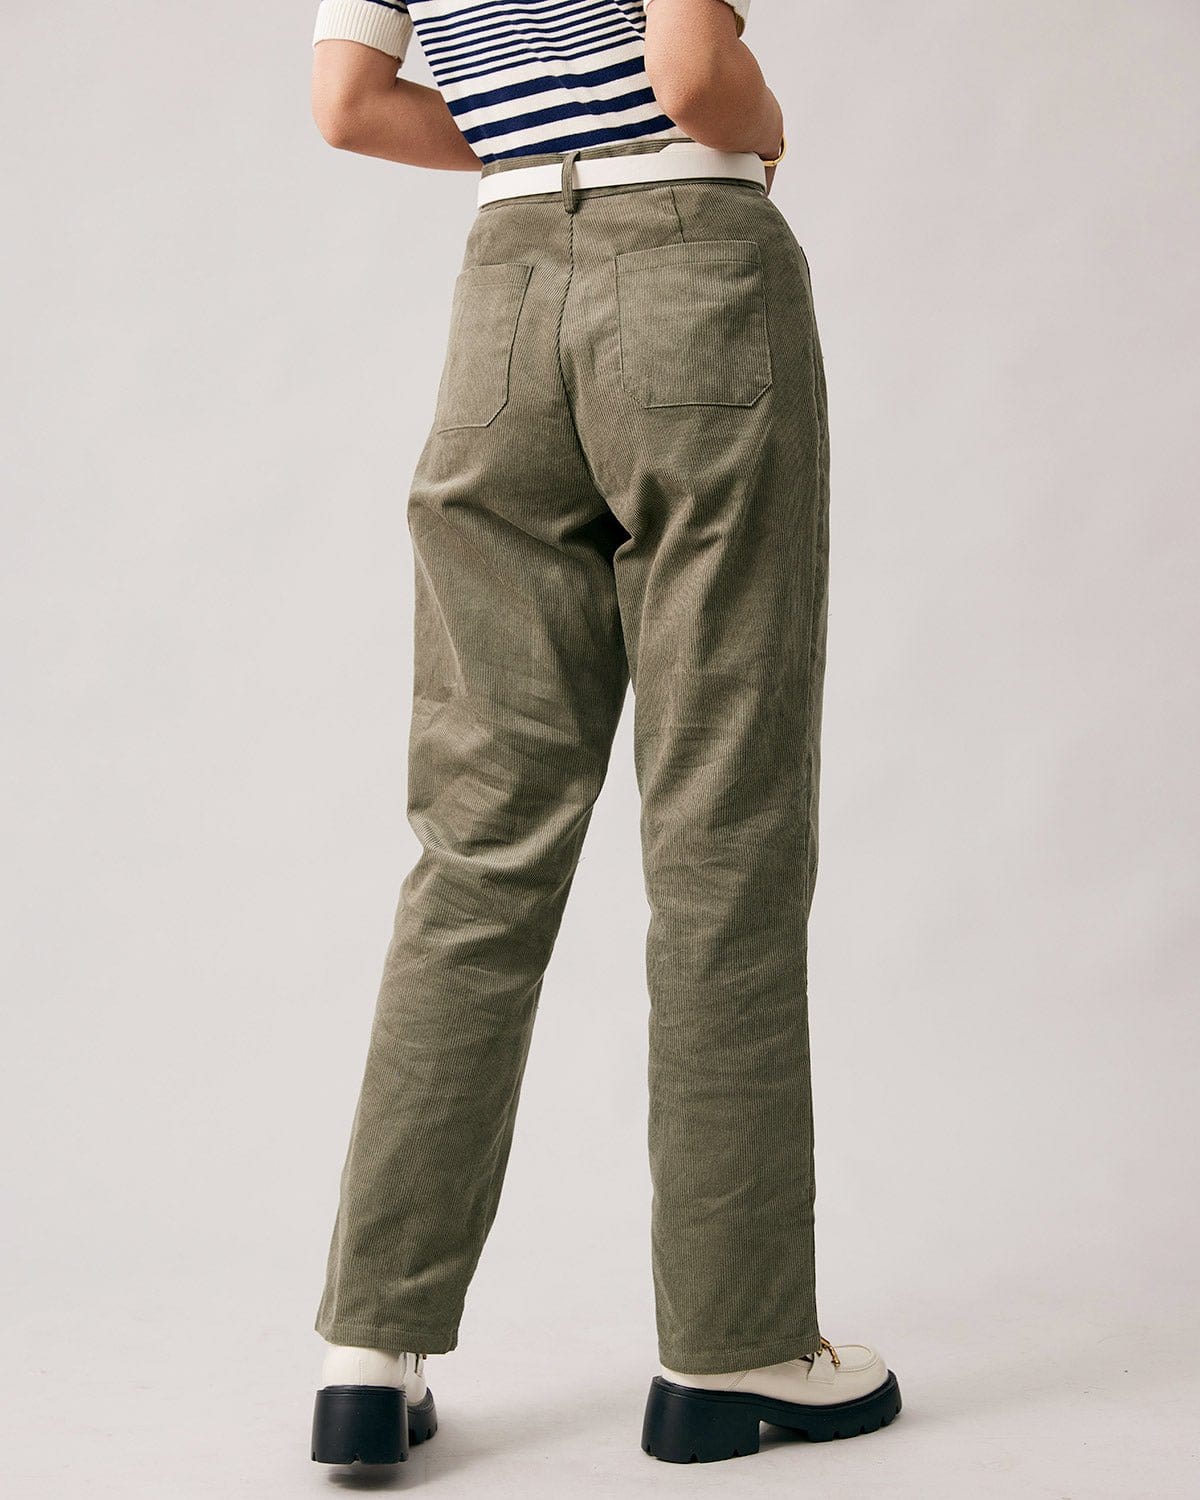 https://www.rihoas.com/cdn/shop/products/the-green-high-waist-corduroy-pants-bottoms-hrqbal-114285.jpg?v=1698113209